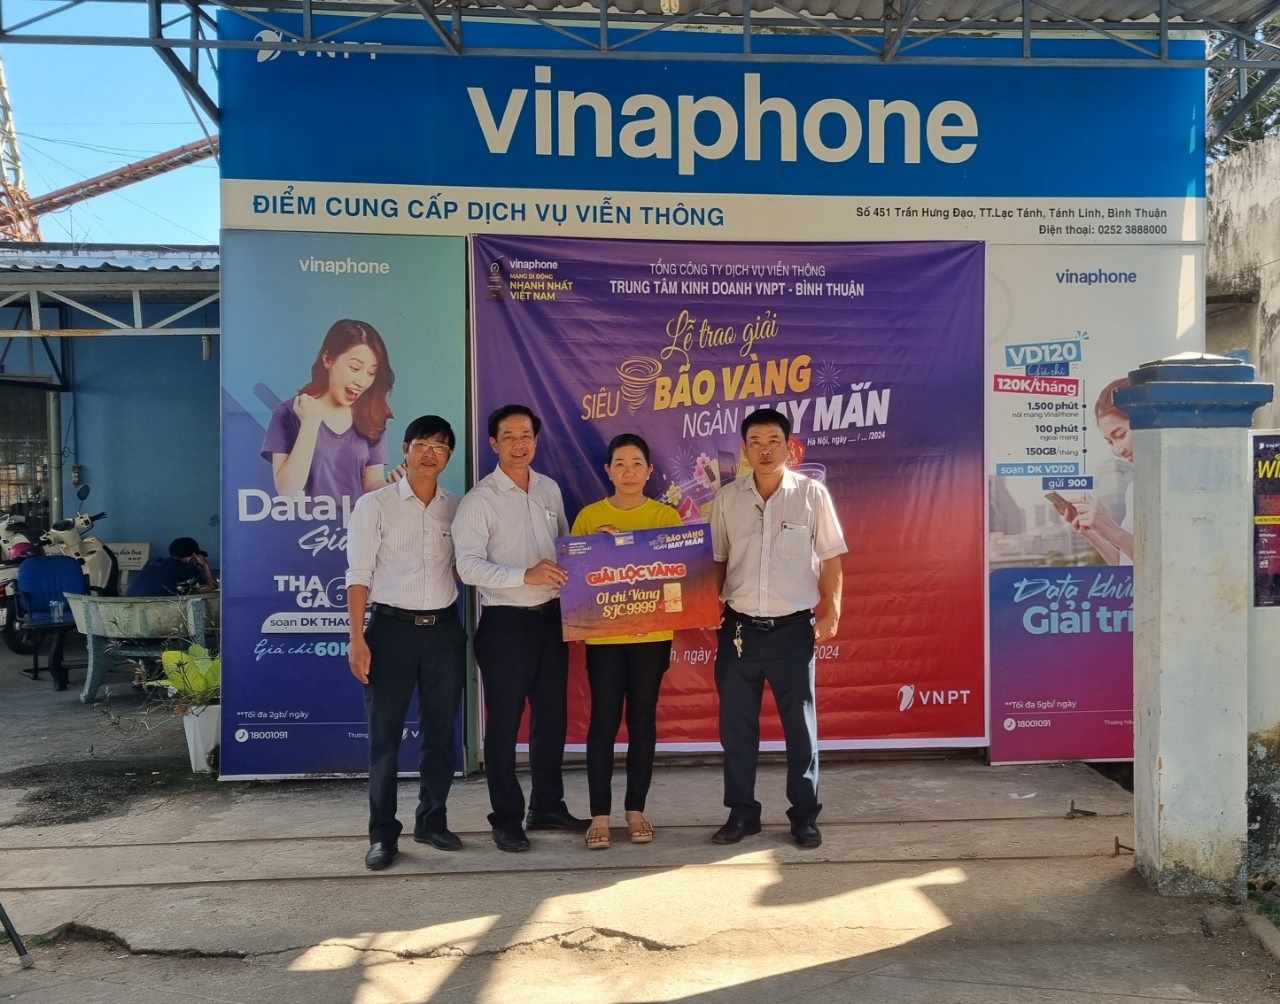 VinaPhone đã tìm được những khách hàng là chủ nhân may mắn của các giải VÀNG SJC 9999